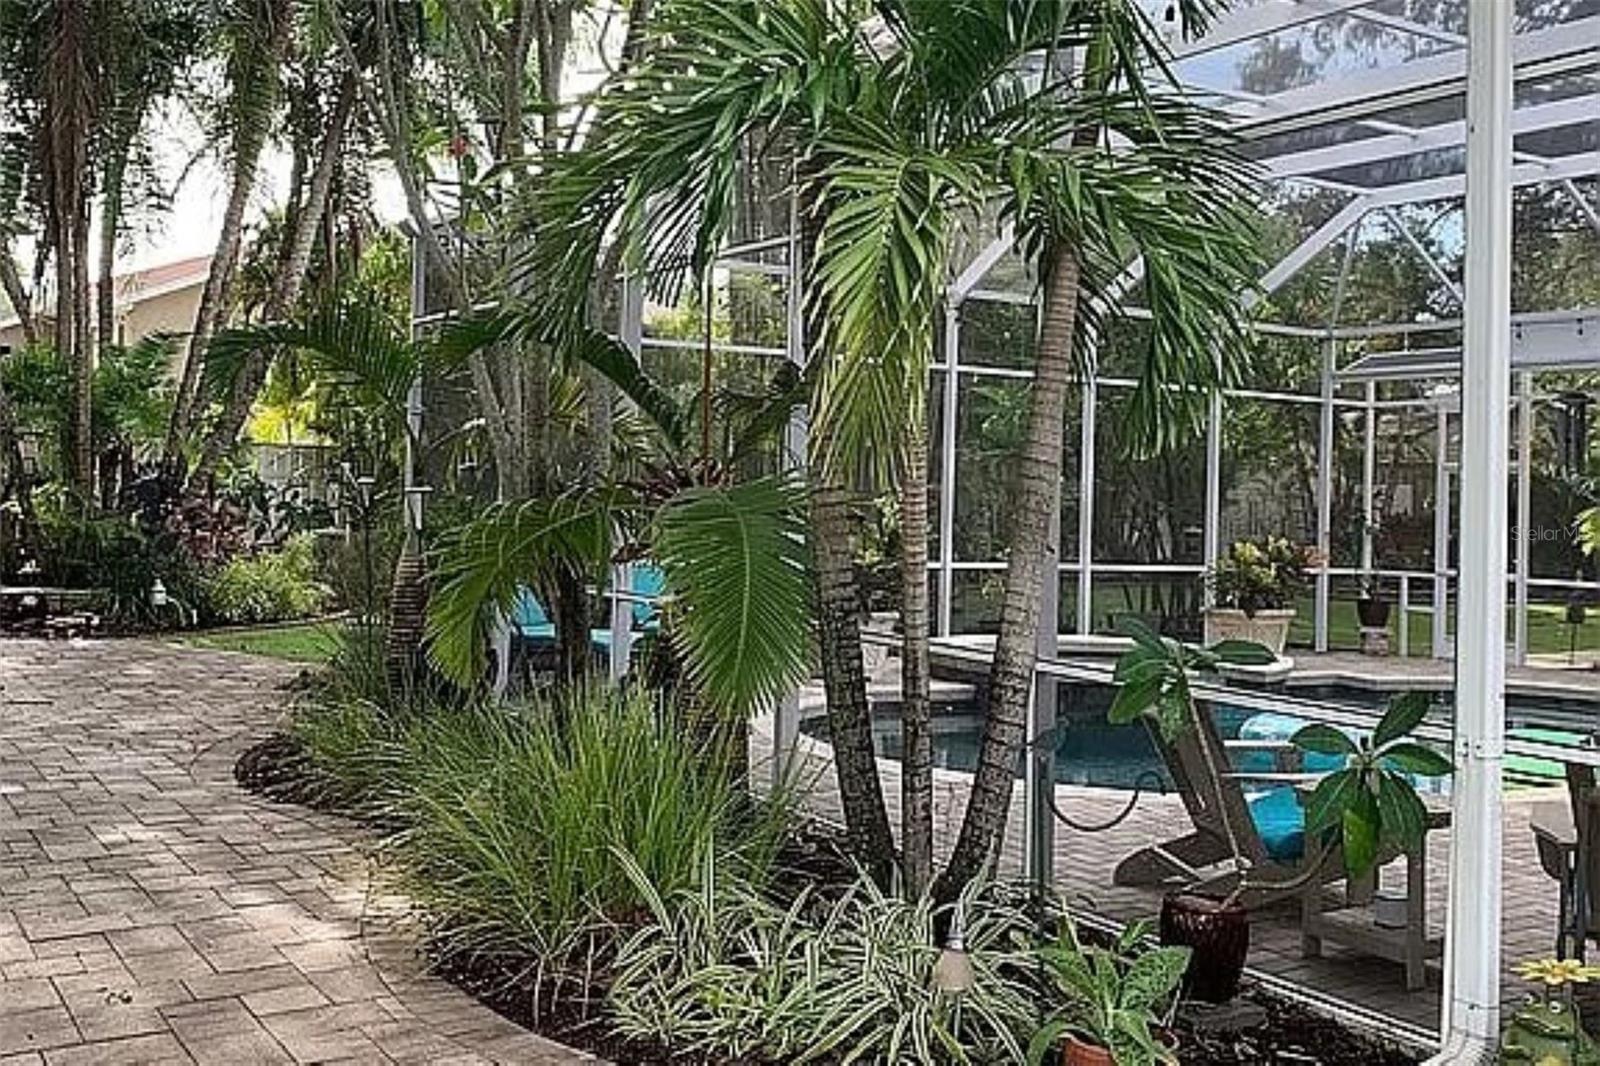 From gazebo area to pool beautiful plants w/palm